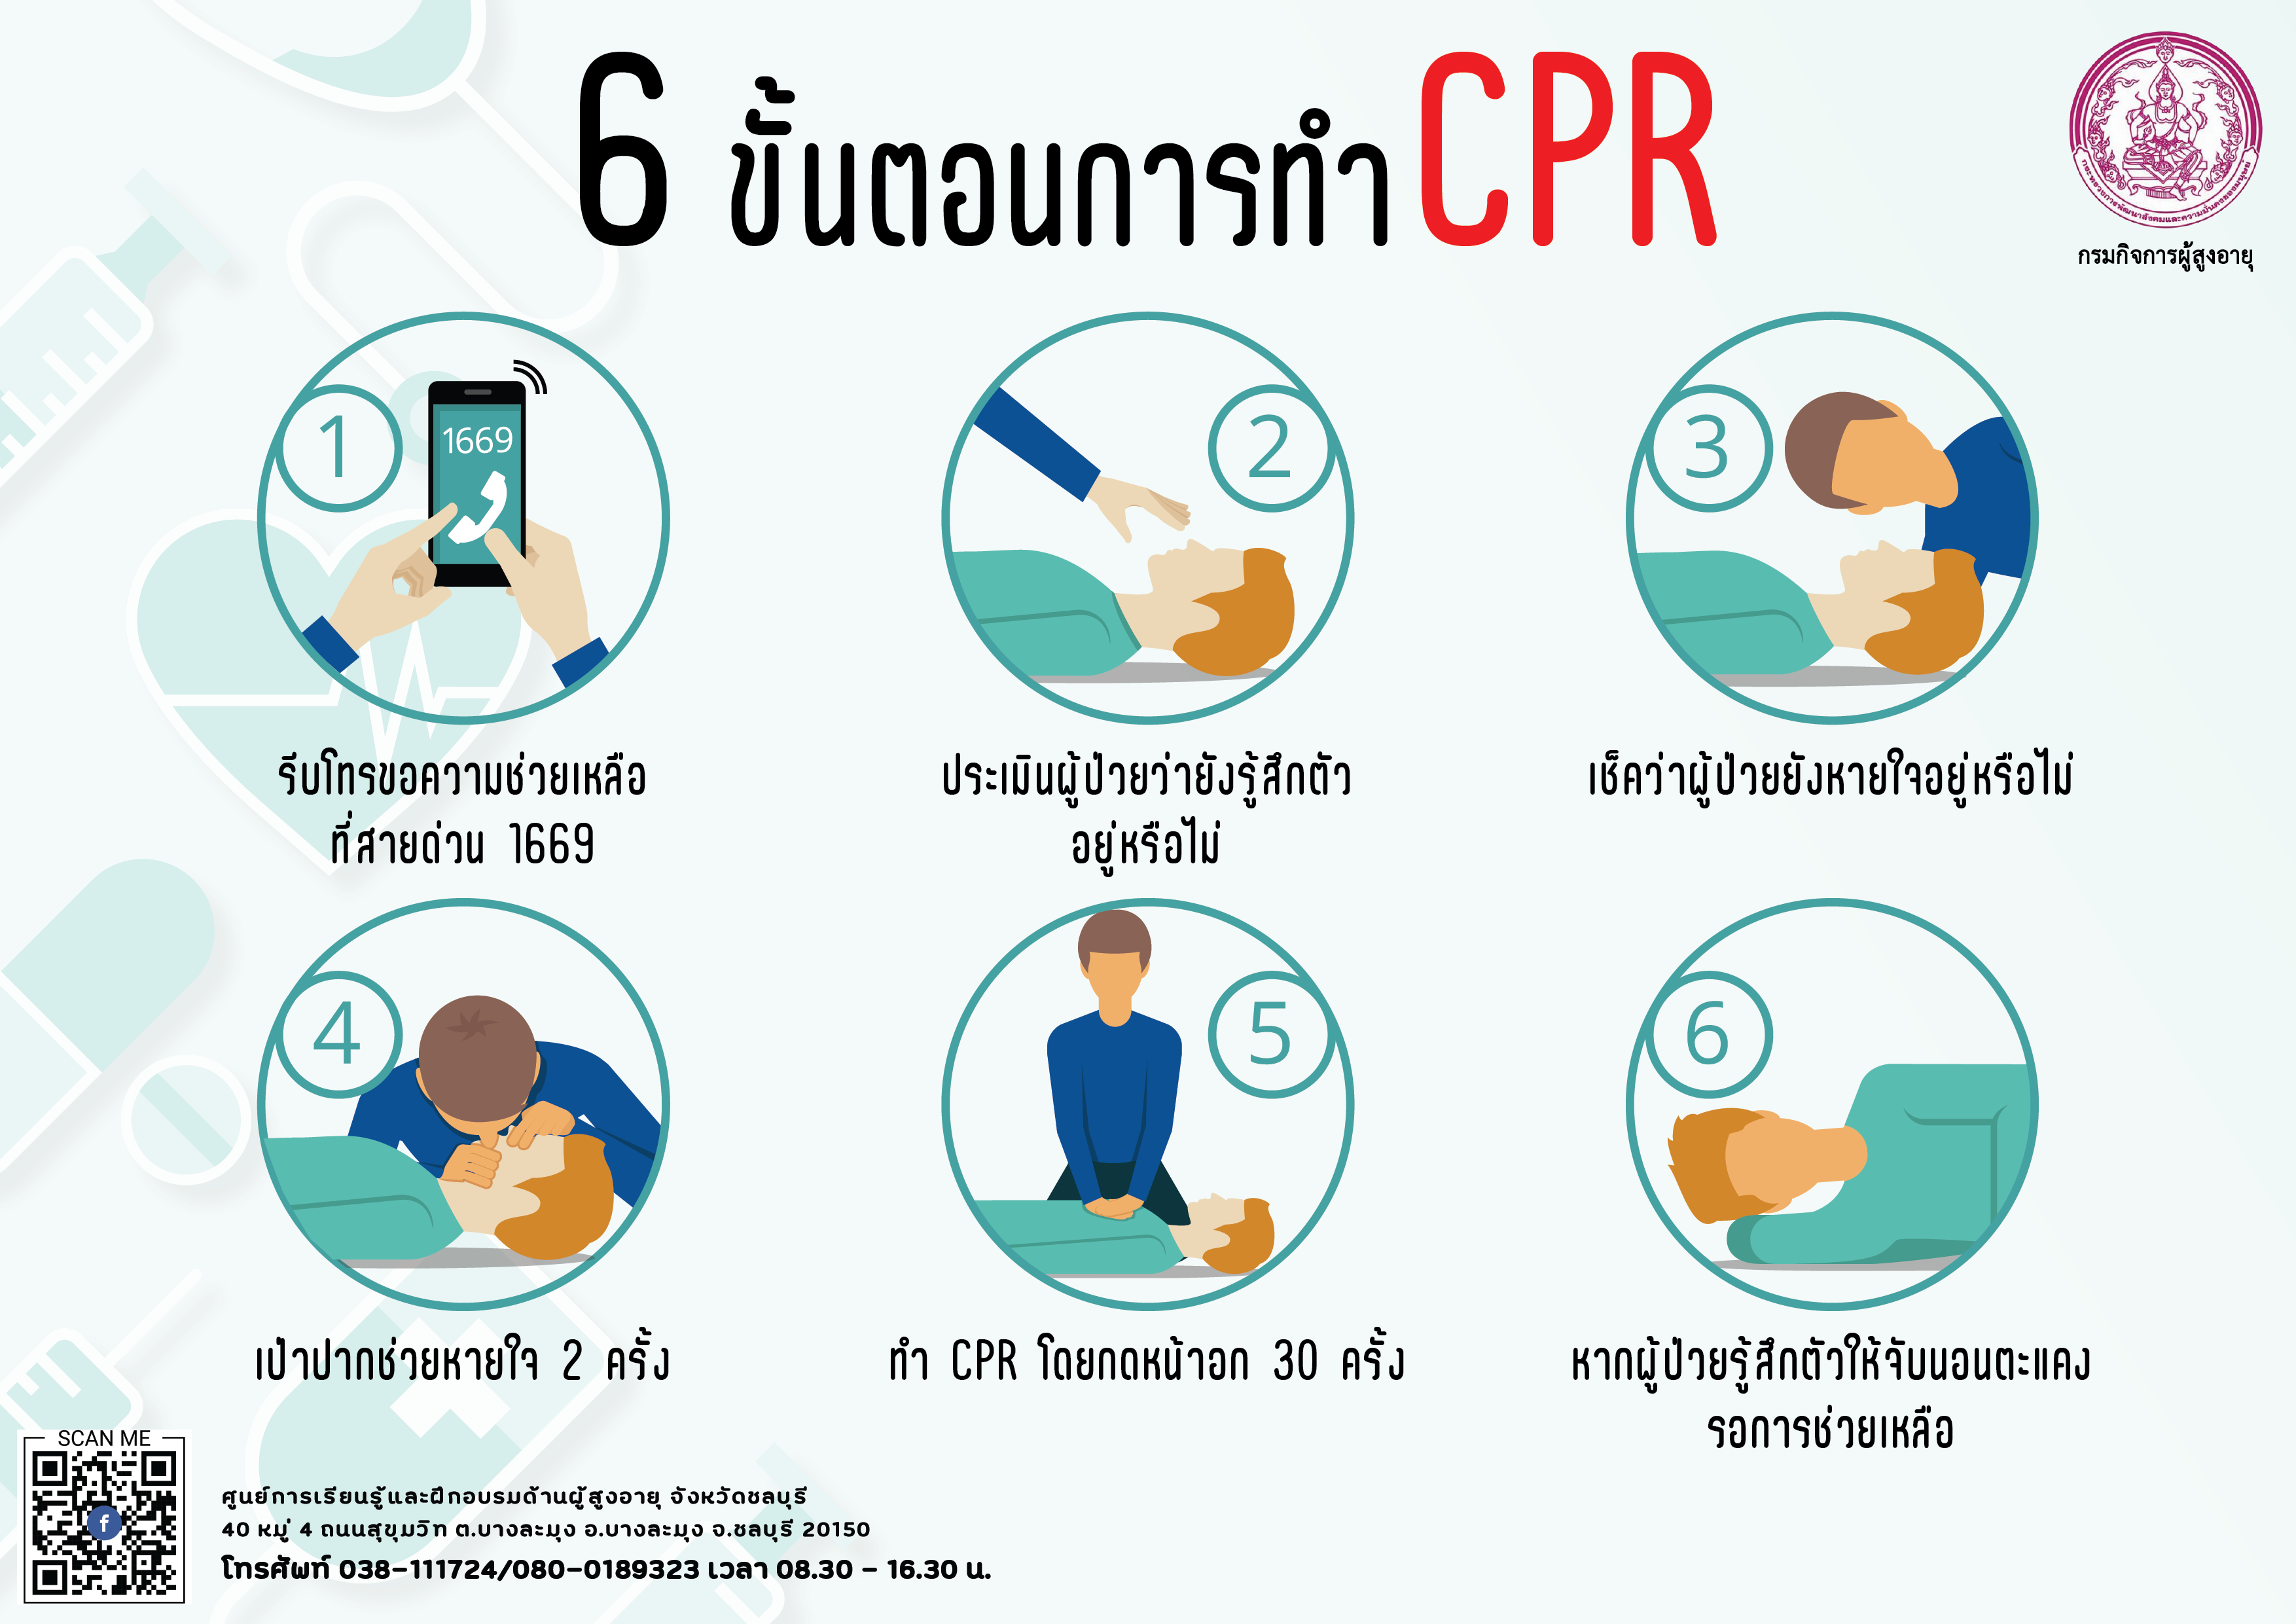 6 ขั้นตอนการทำ CPR (สศส.)